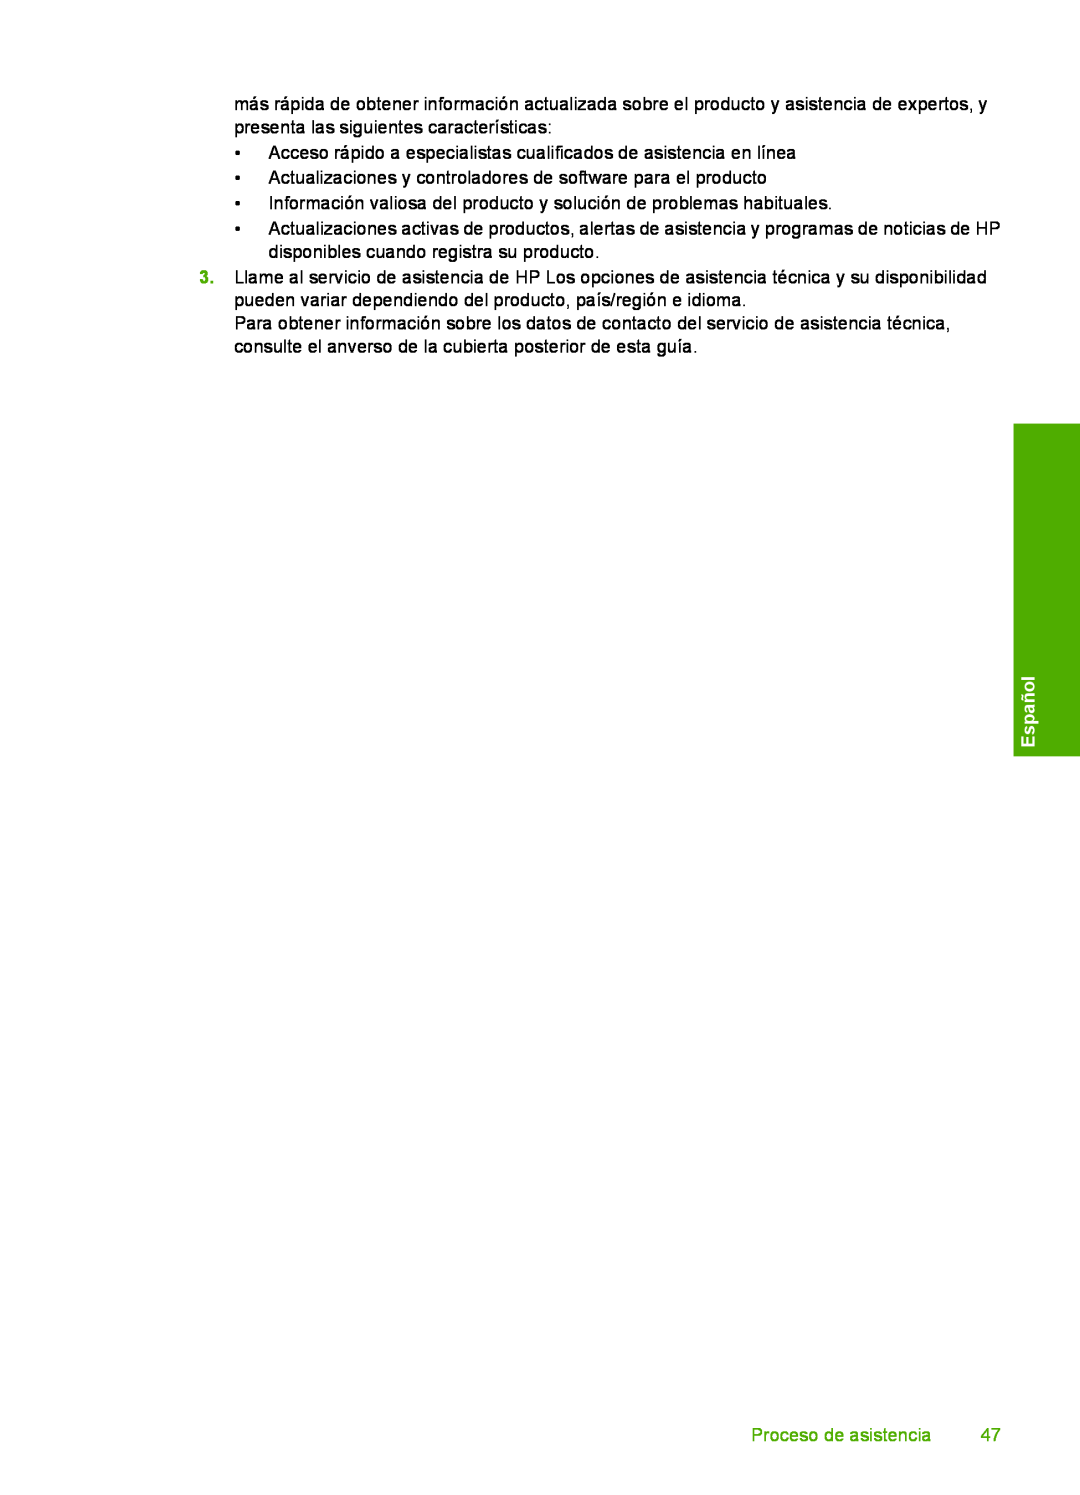 HP D7560 manual Español, Proceso de asistencia 